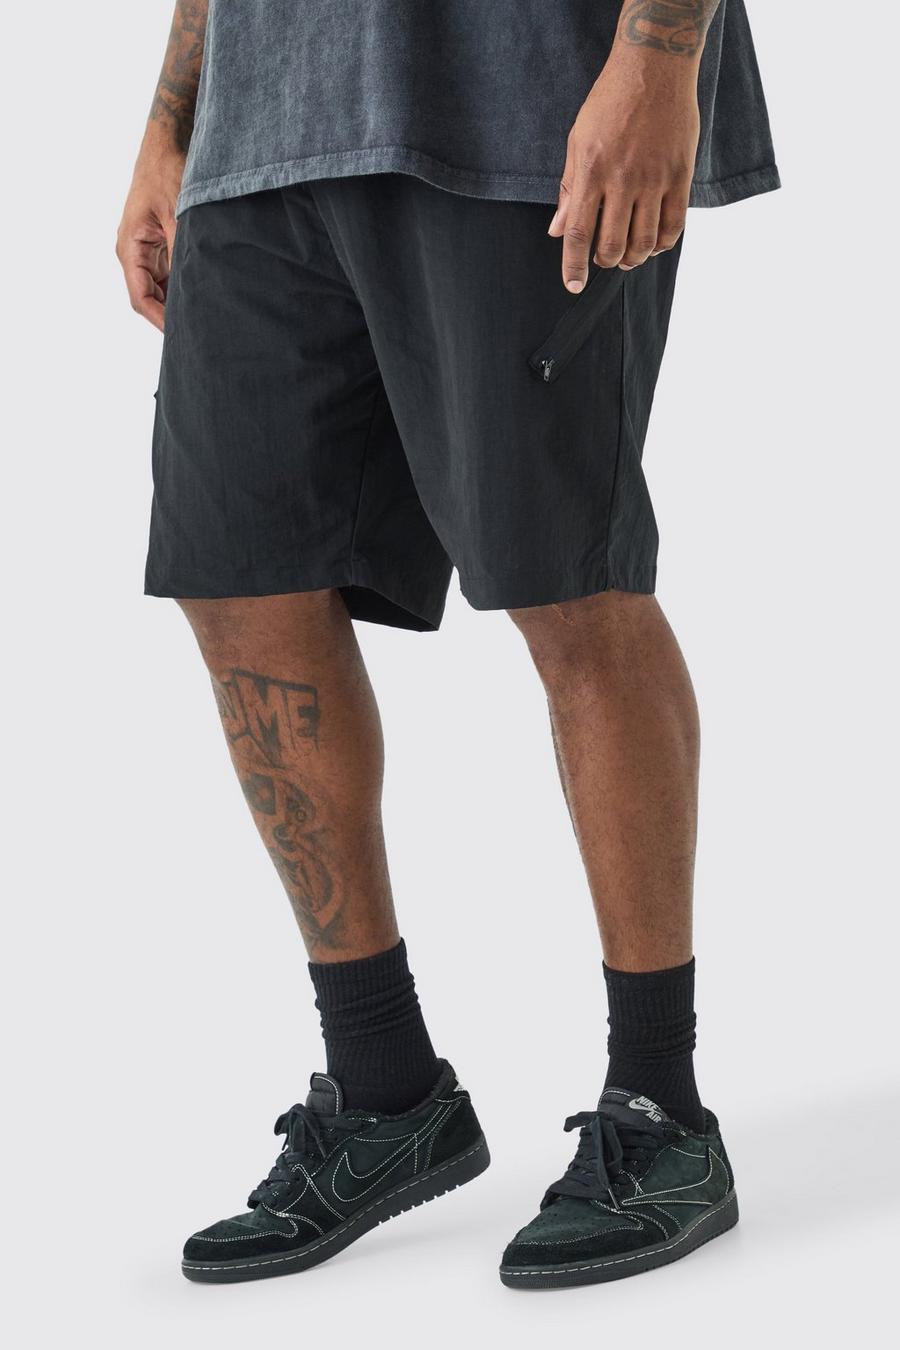 Pantaloncini Plus Size asimmetrici con vita elasticizzata e zip, Black